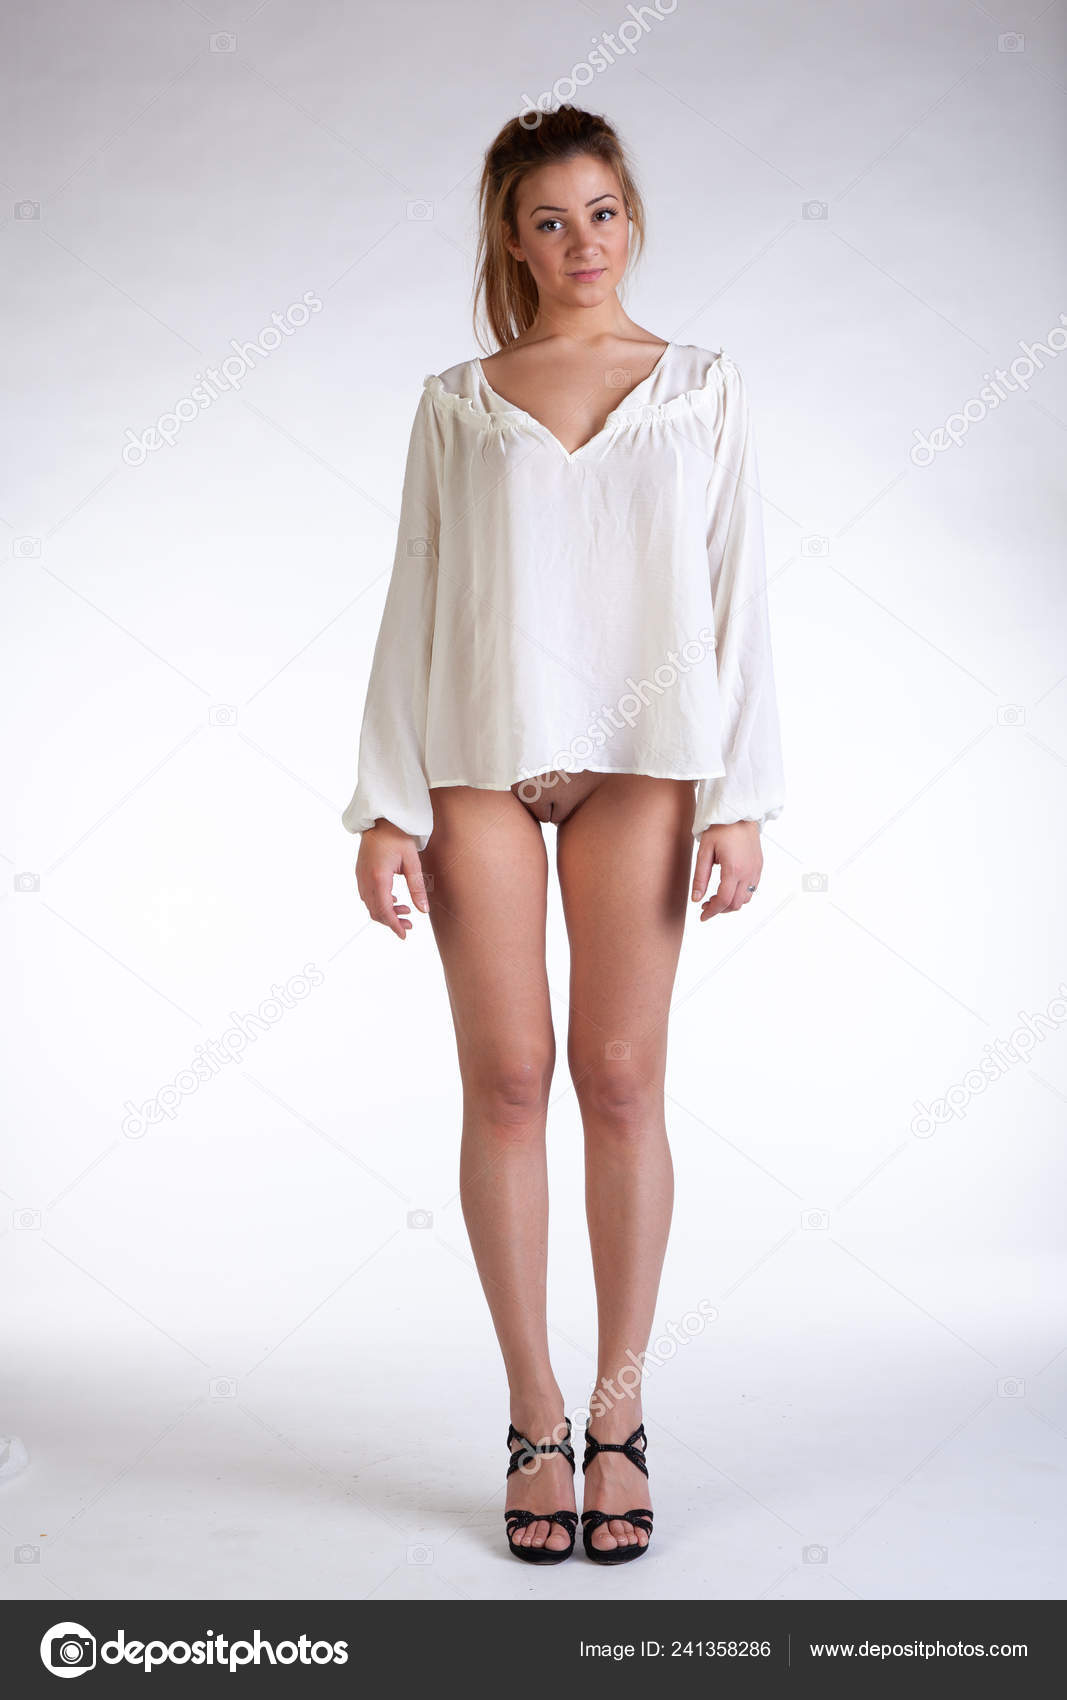 https://st4n.depositphotos.com/10086424/24135/i/1600/depositphotos_241358286-stock-photo-young-beautiful-girl-posing-nude.jpg